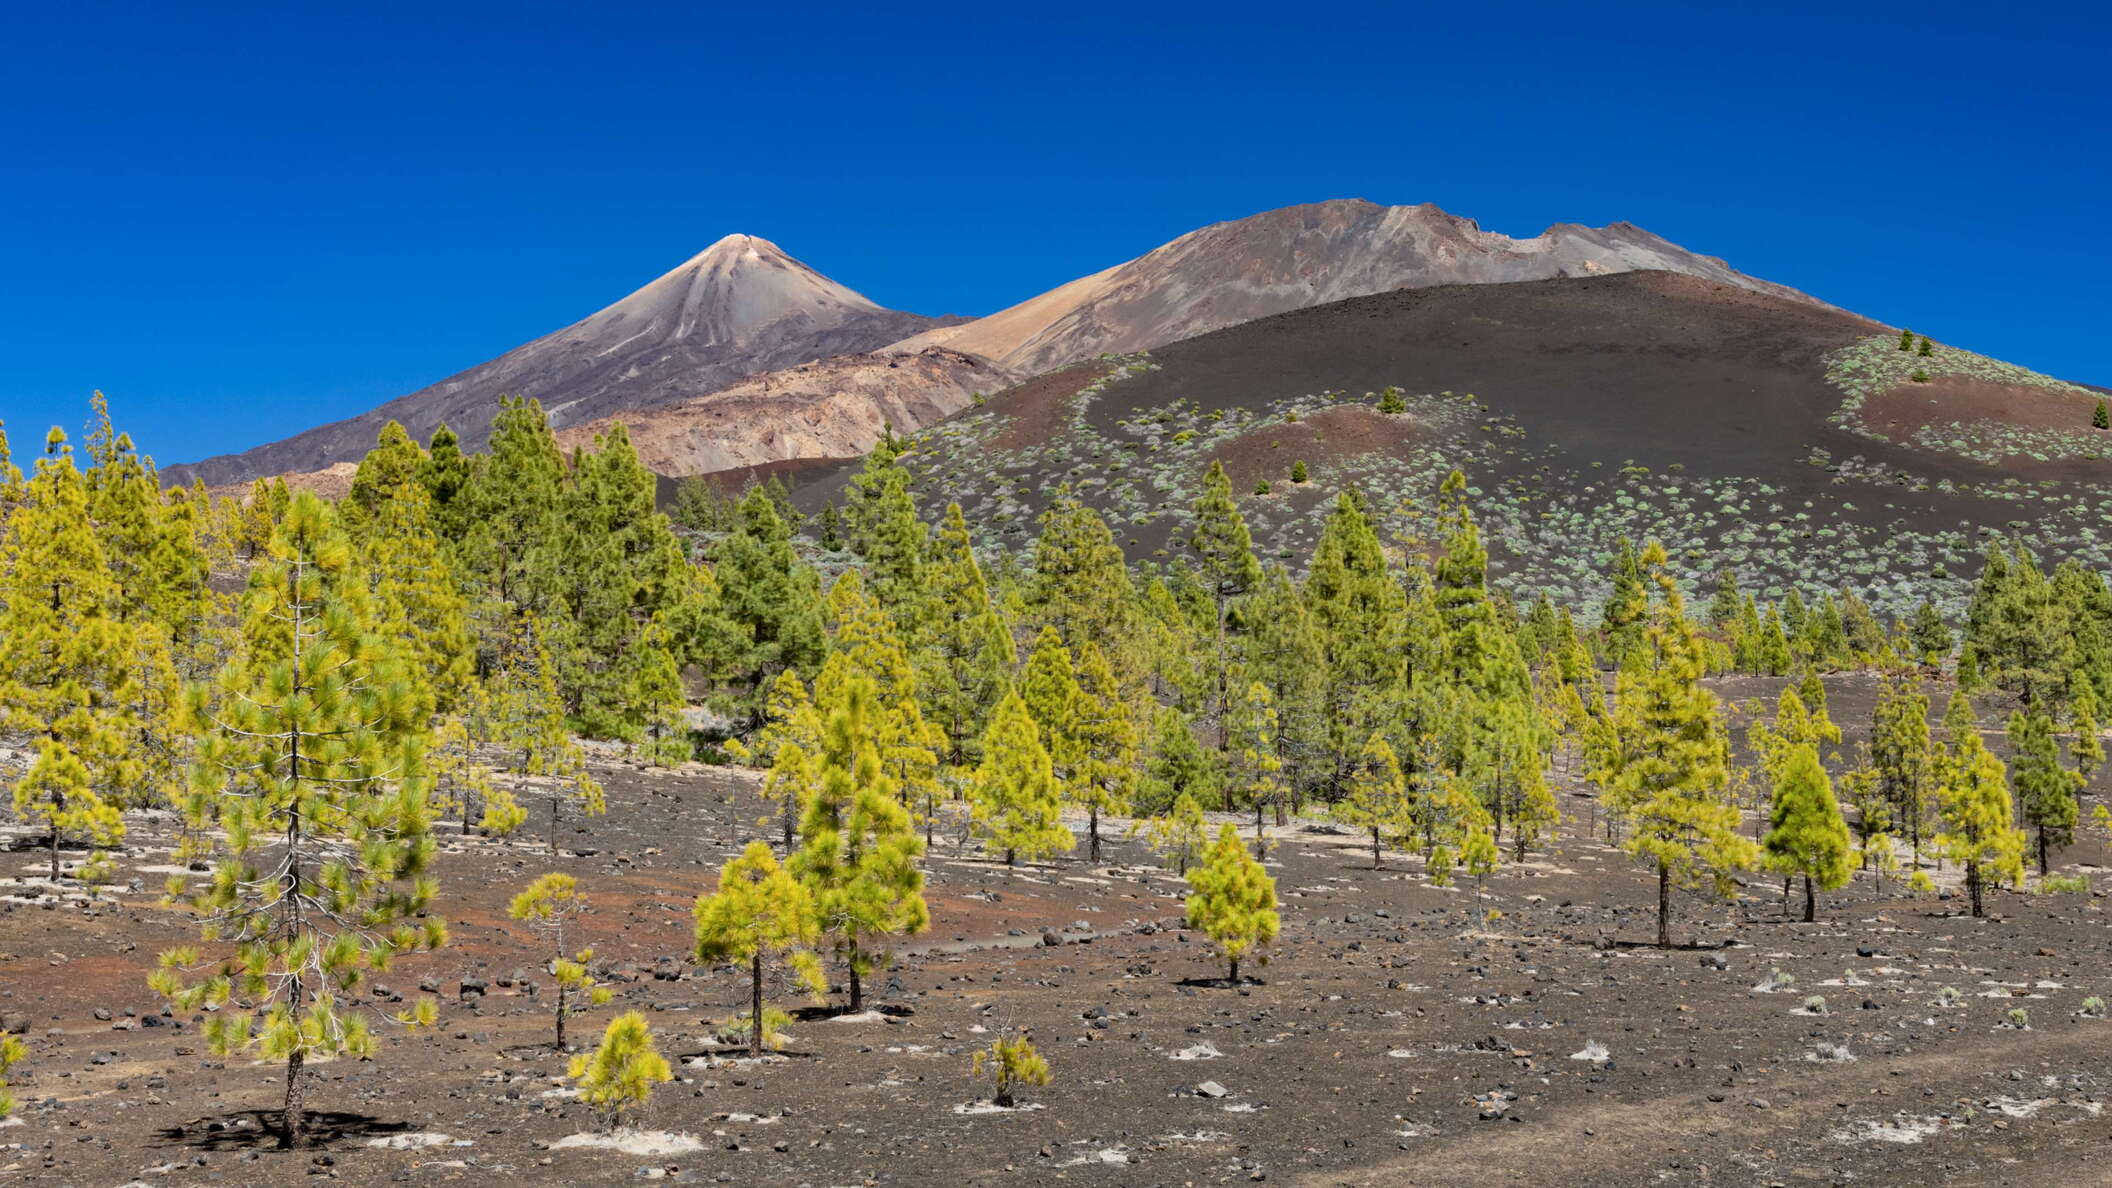 Pico del Teide and Pico Viejo